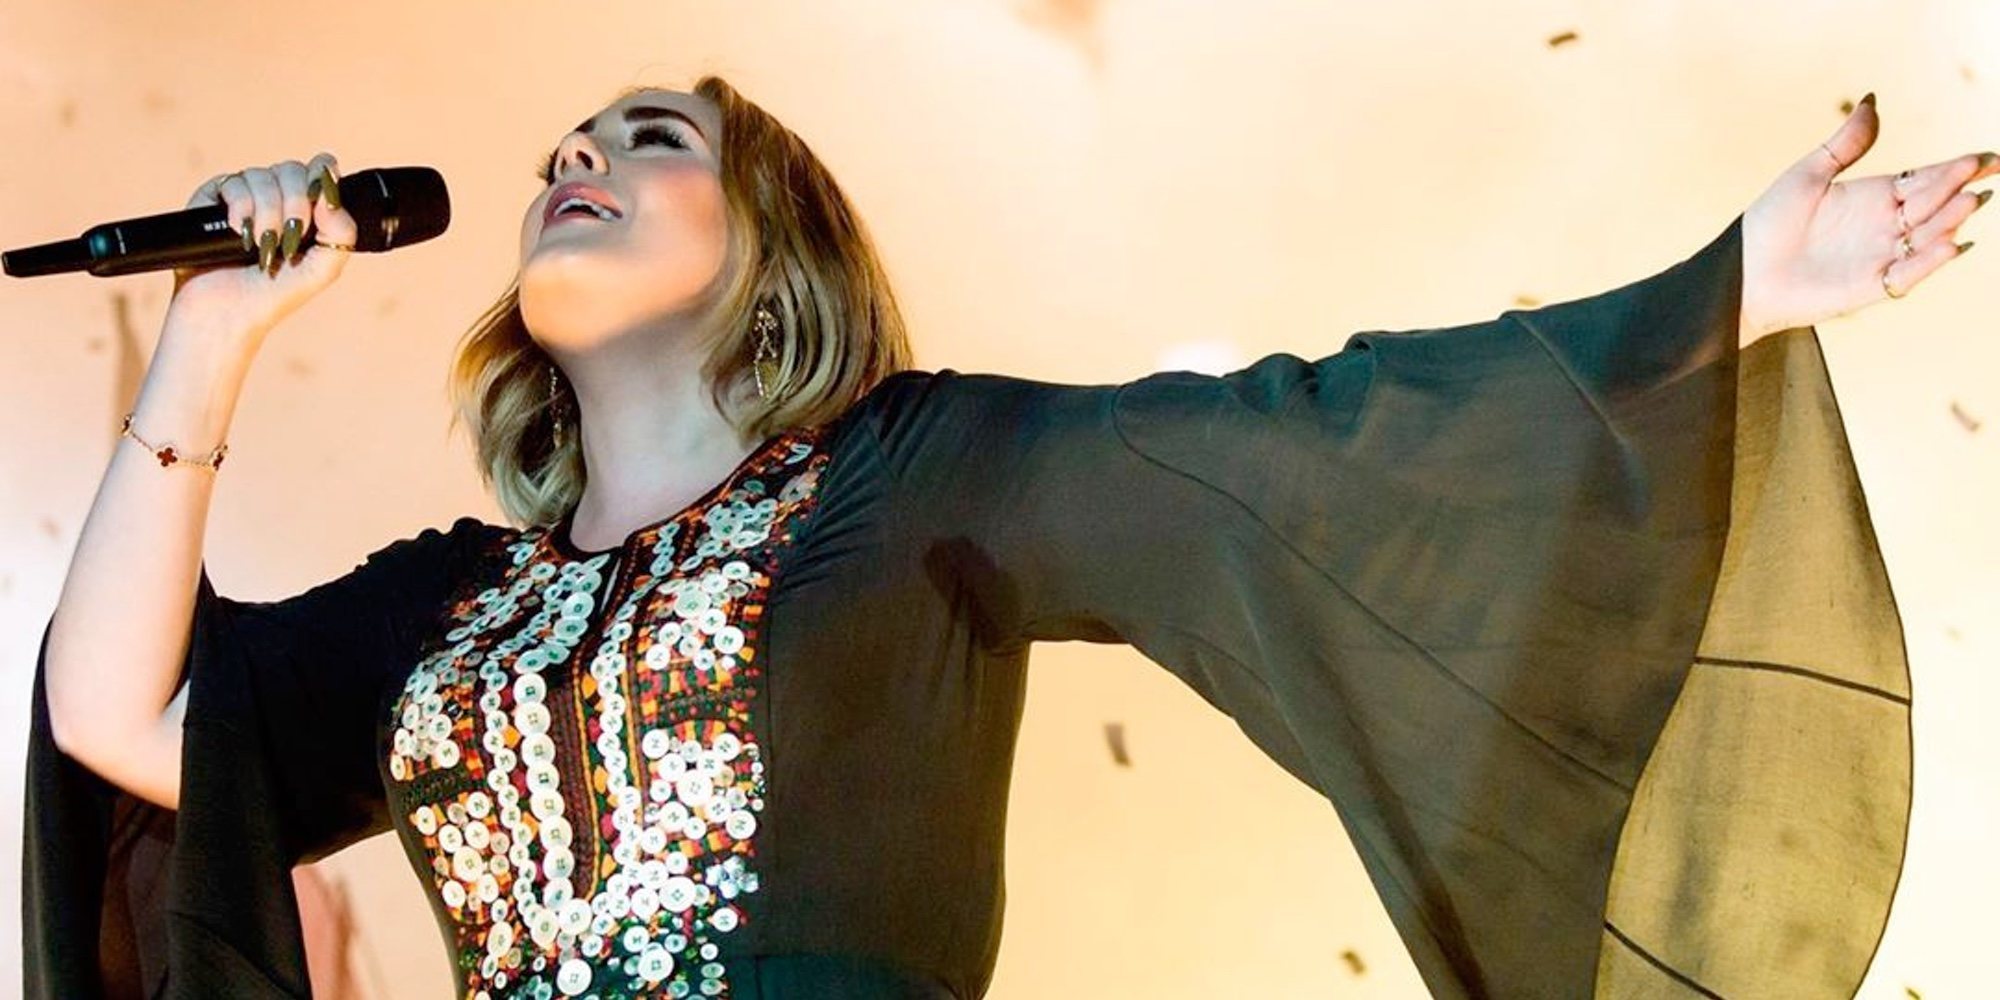 La foto de Adele en bikini tras su increíble cambio físico que se ha hecho viral